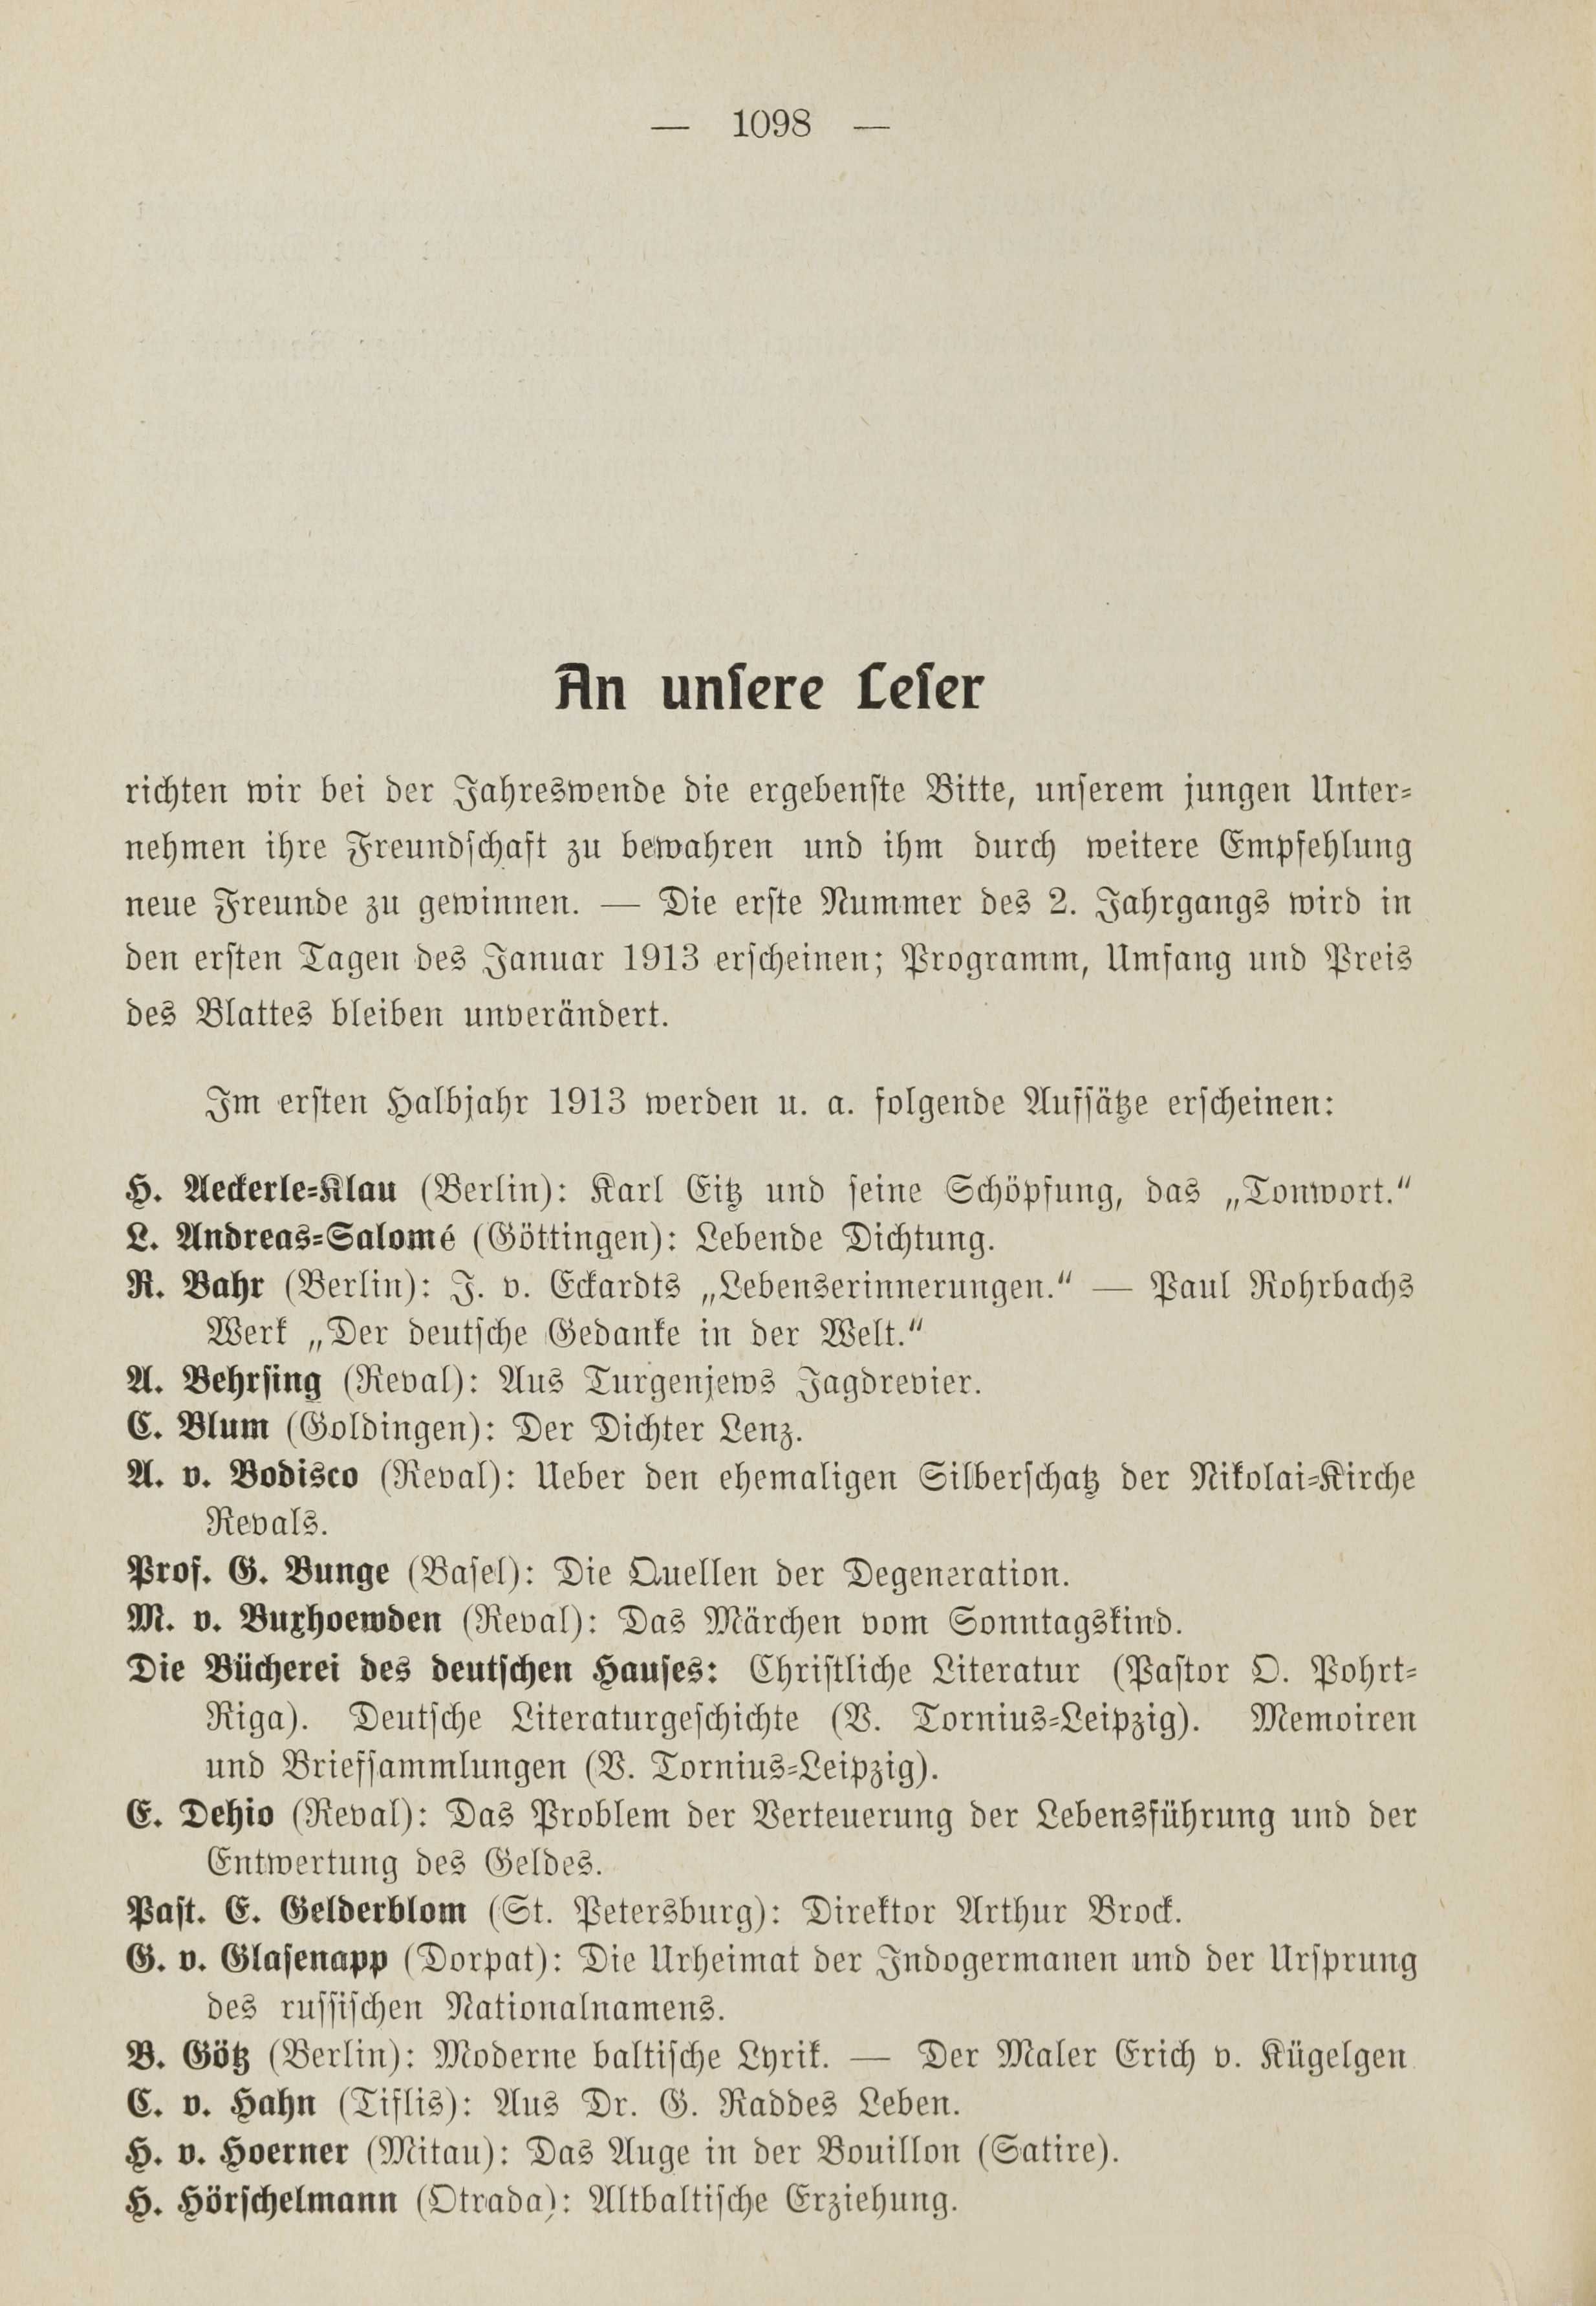 Deutsche Monatsschrift für Russland [1] (1912) | 1106. (1098) Main body of text